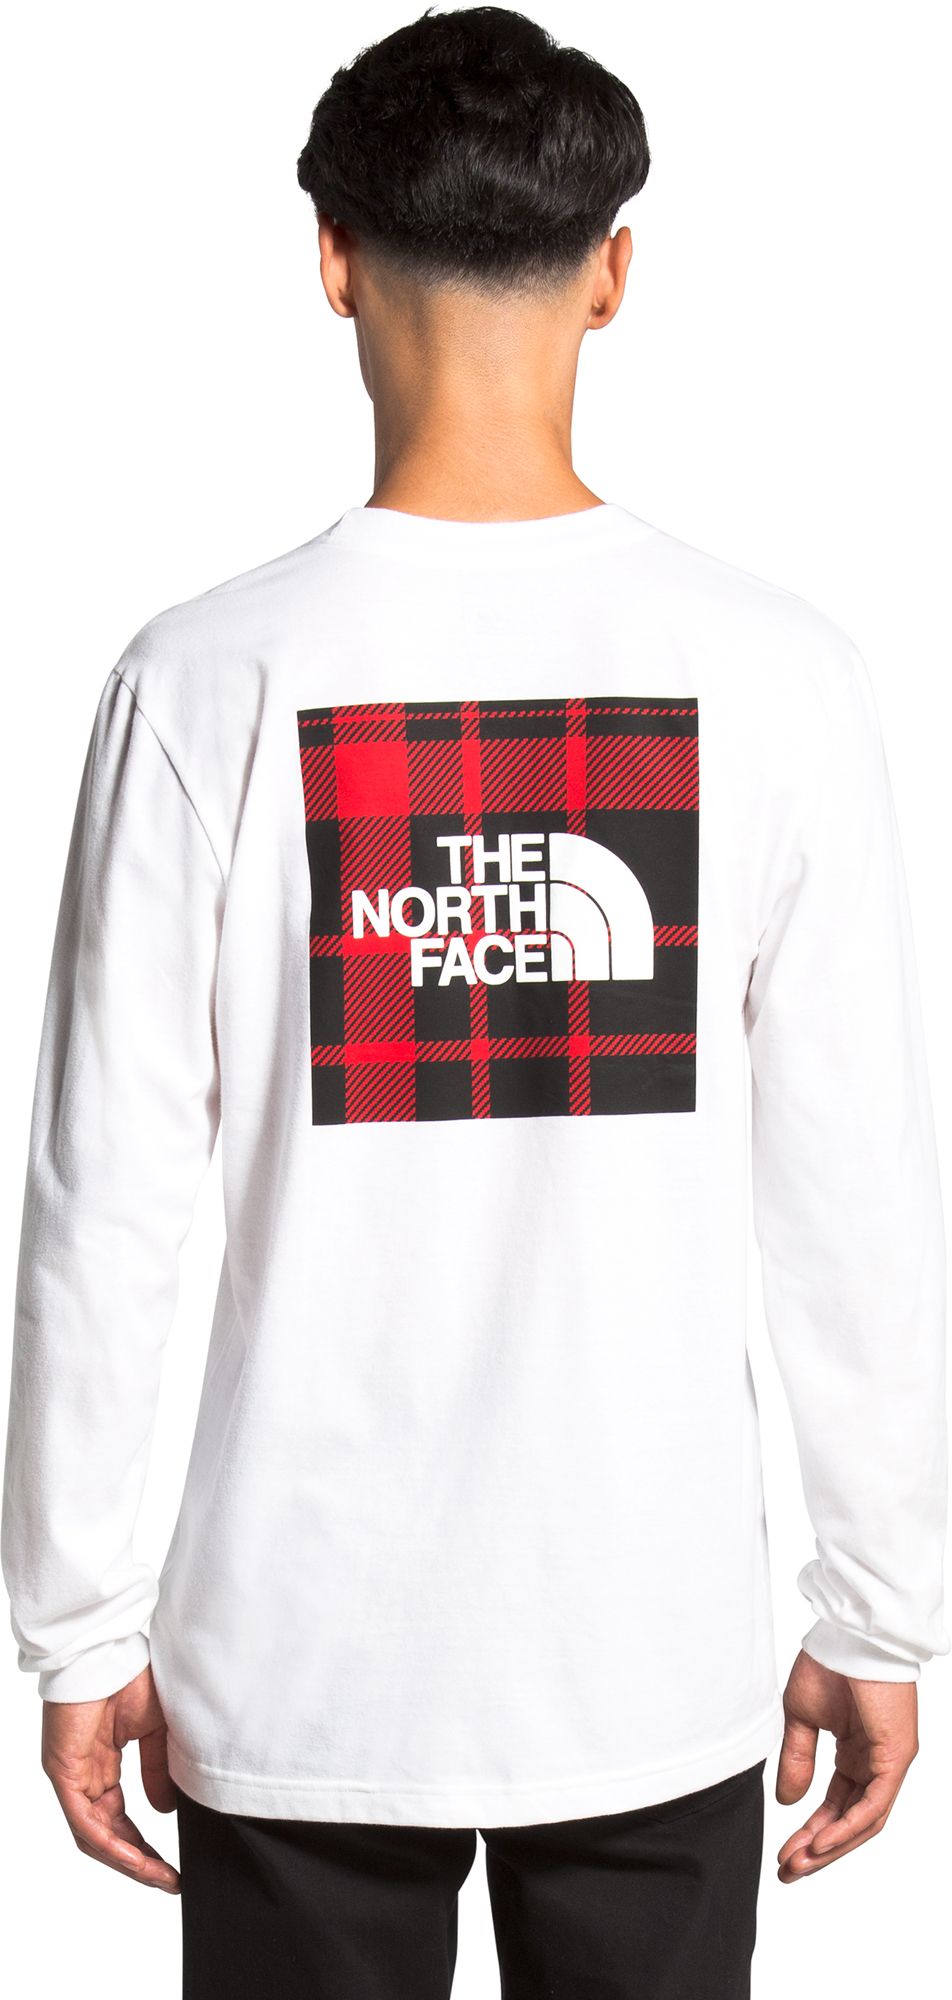 north face mens shirts long sleeve